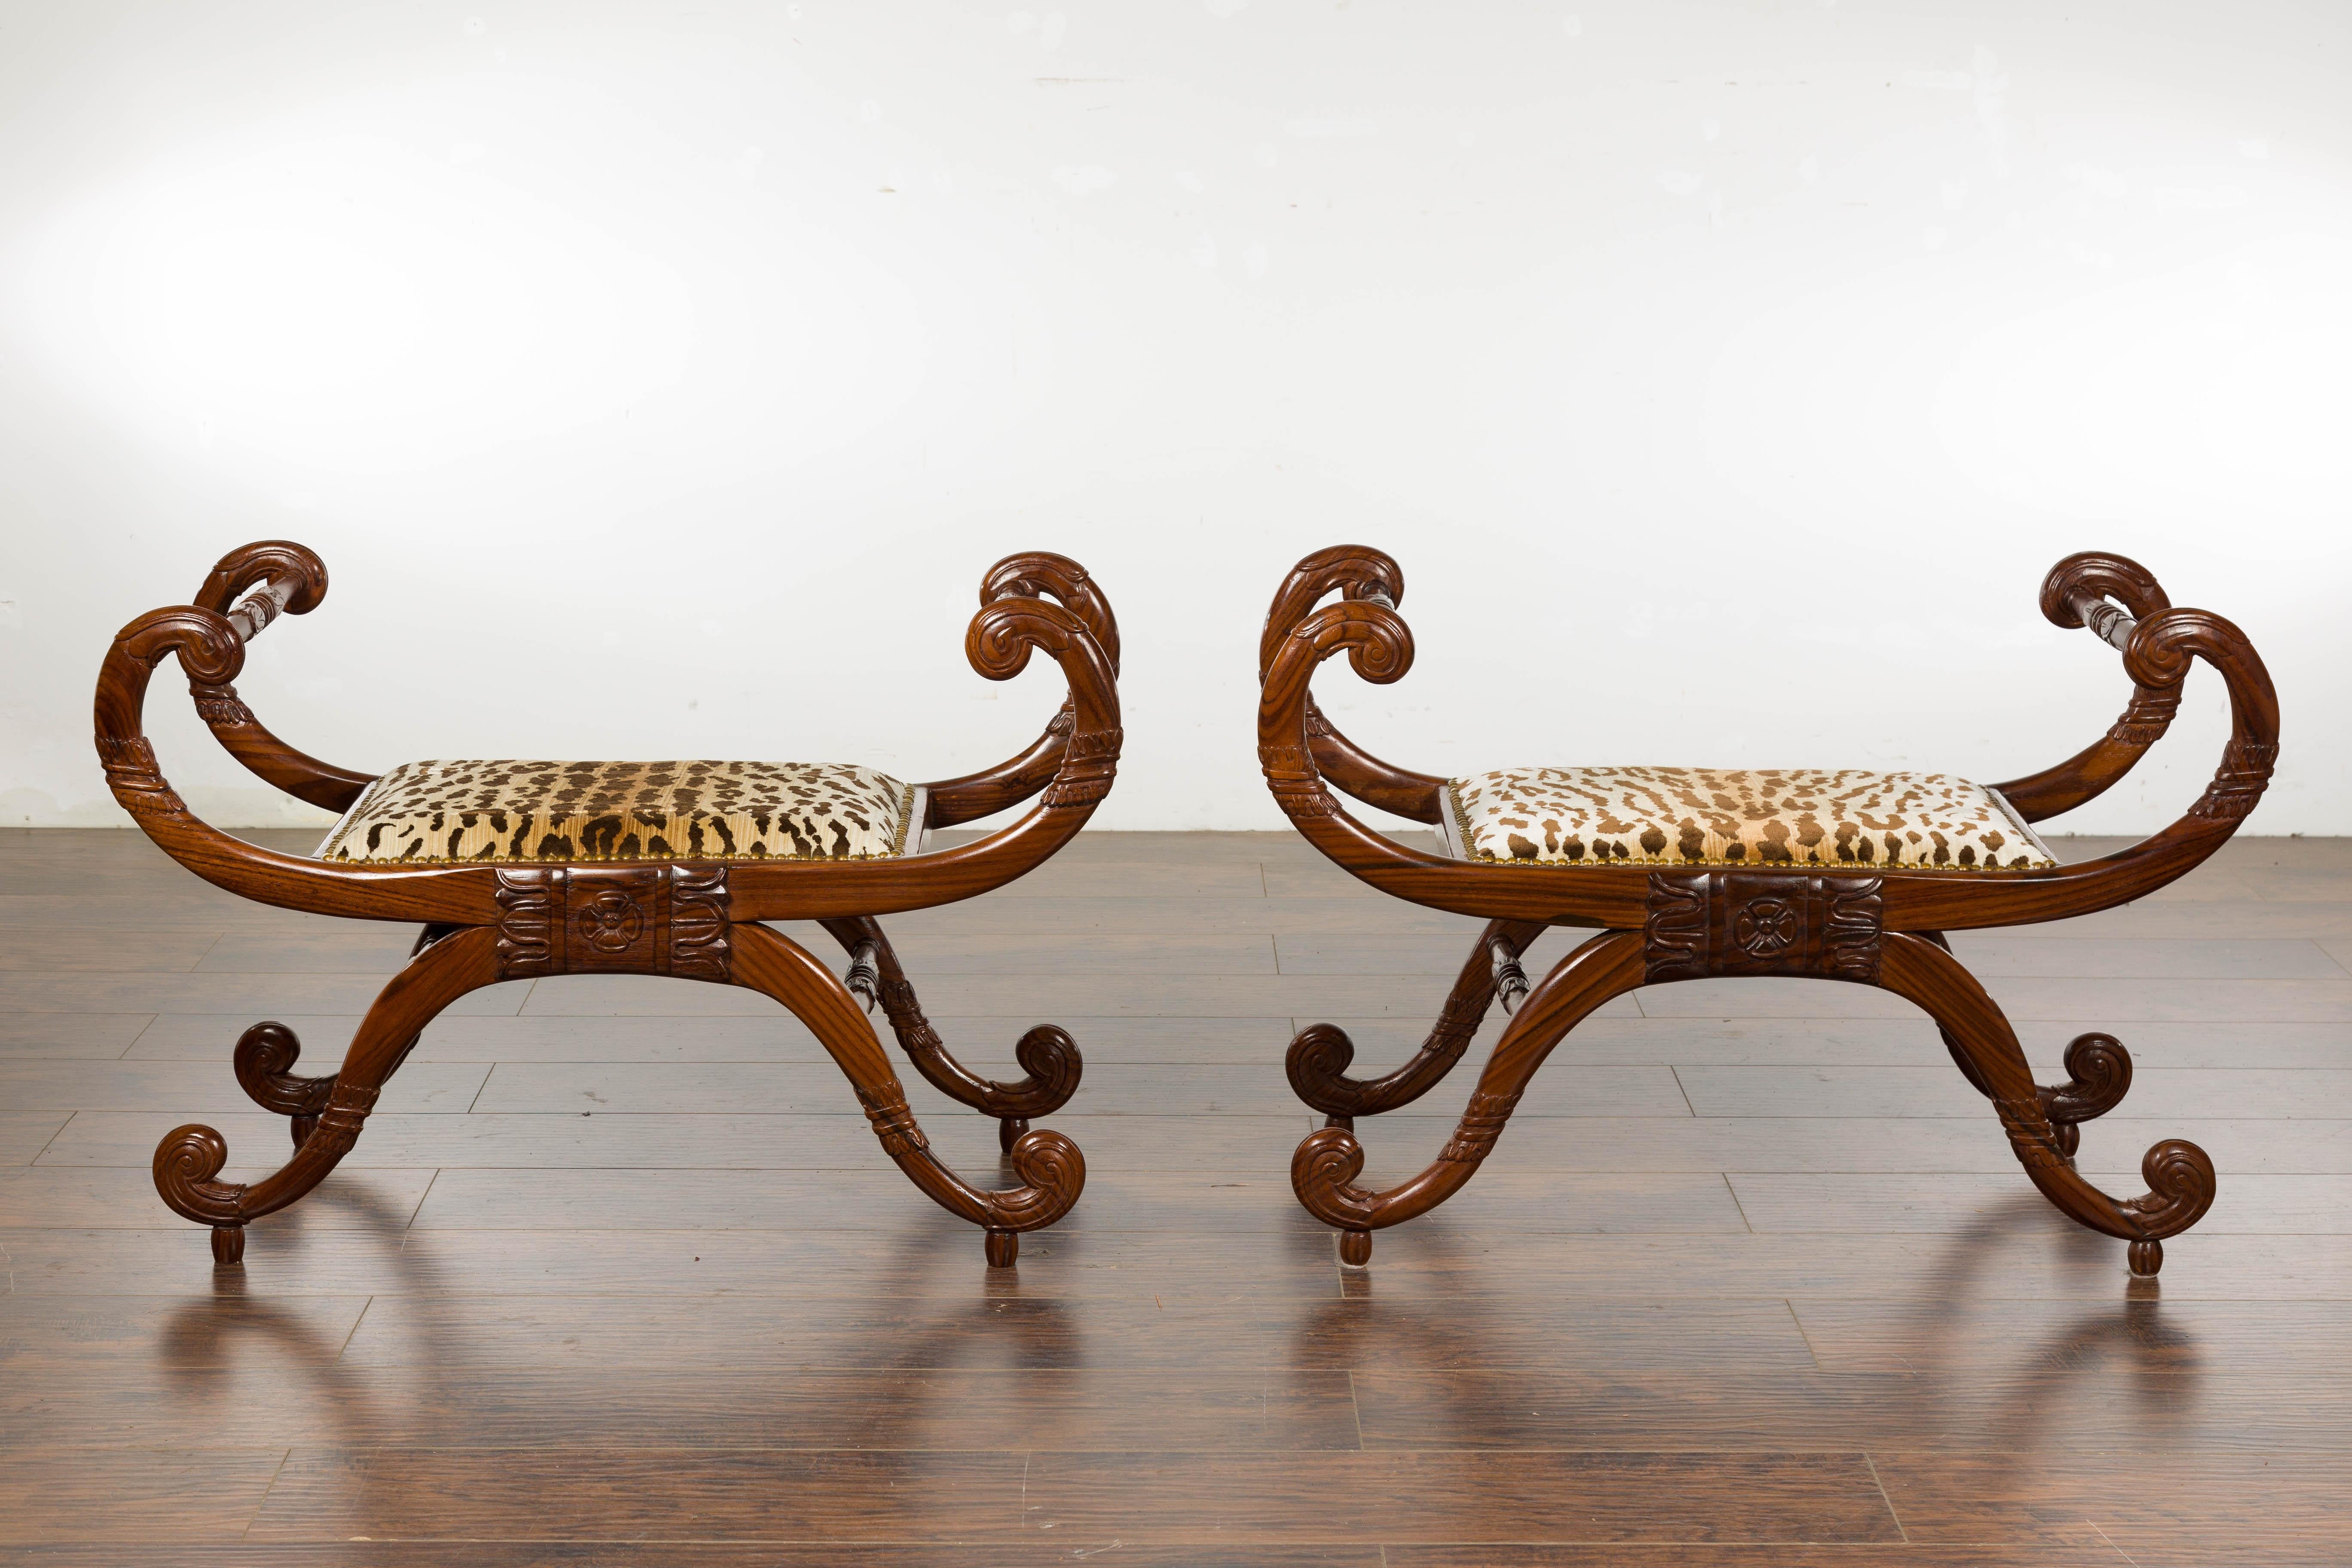 Ein Paar englische Regency-Mahagoni-Hocker aus dem 19. Jahrhundert mit großen geschwungenen Armen und Beinen, geschnitztem Blattwerk und gepolsterten Sitzen im Tiger-Stil. Verleihen Sie Ihrem Zuhause den vornehmen Charme der englischen Regency-Zeit